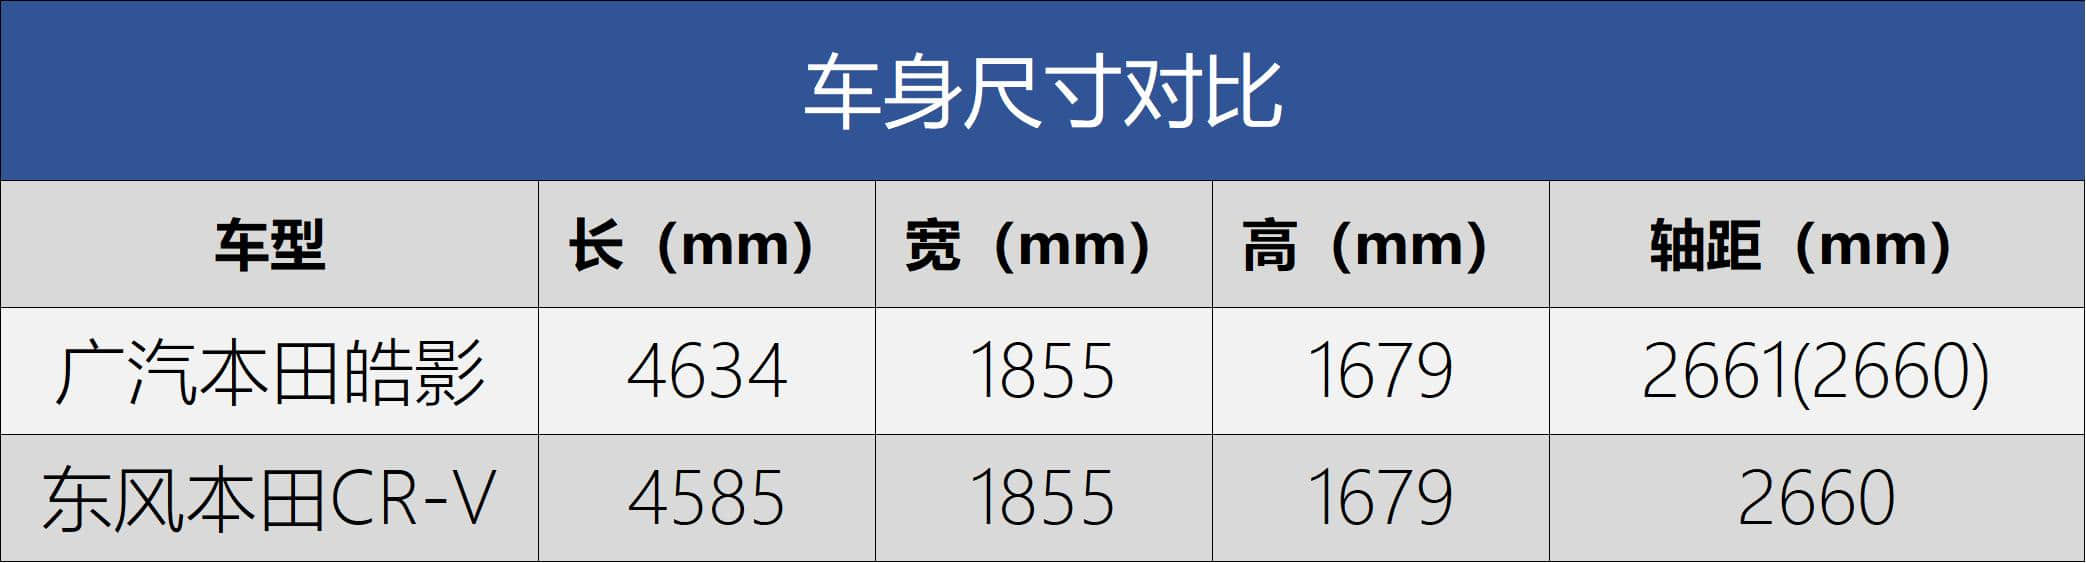 广汽本田全新车型定名“皓影”定位于紧凑型SUV，颜值完爆CRV